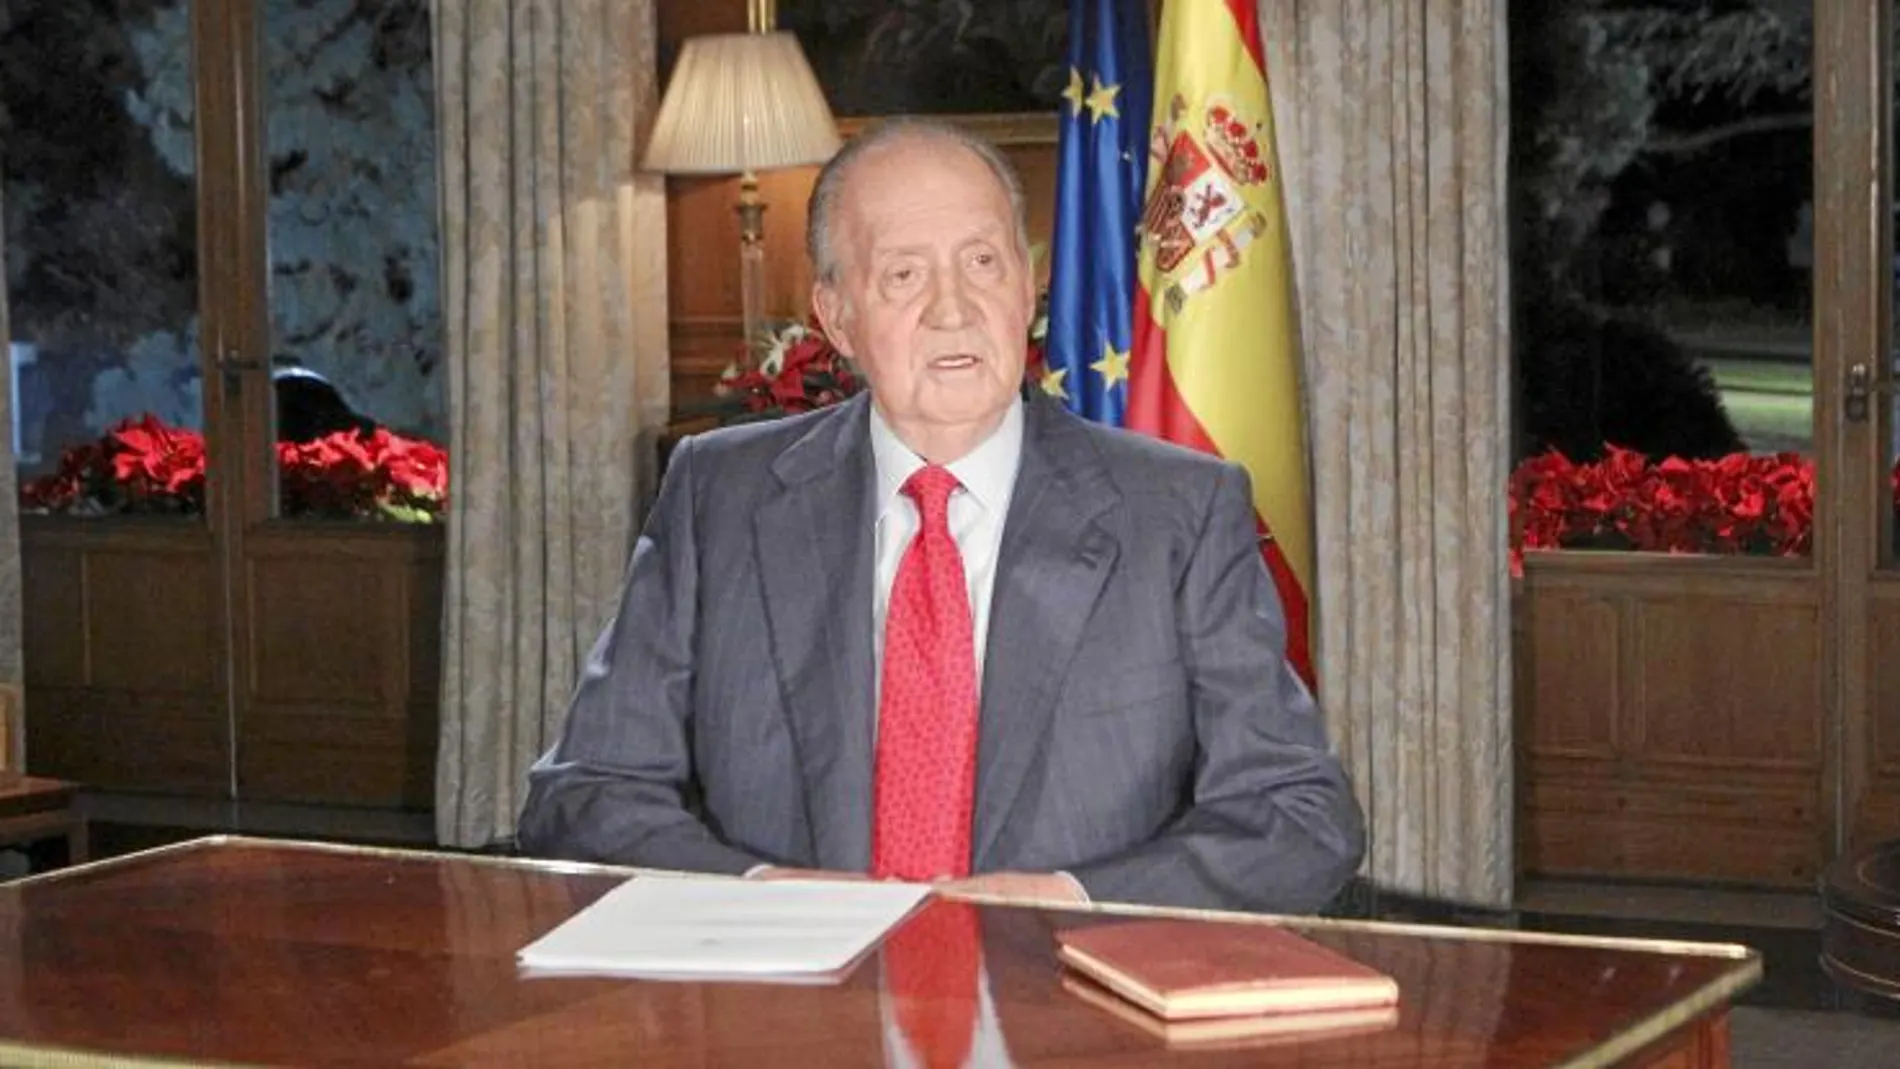 A la izqui. el Belén; sobre la mesa la Constitucuión y la derecha banderas de España y la UE